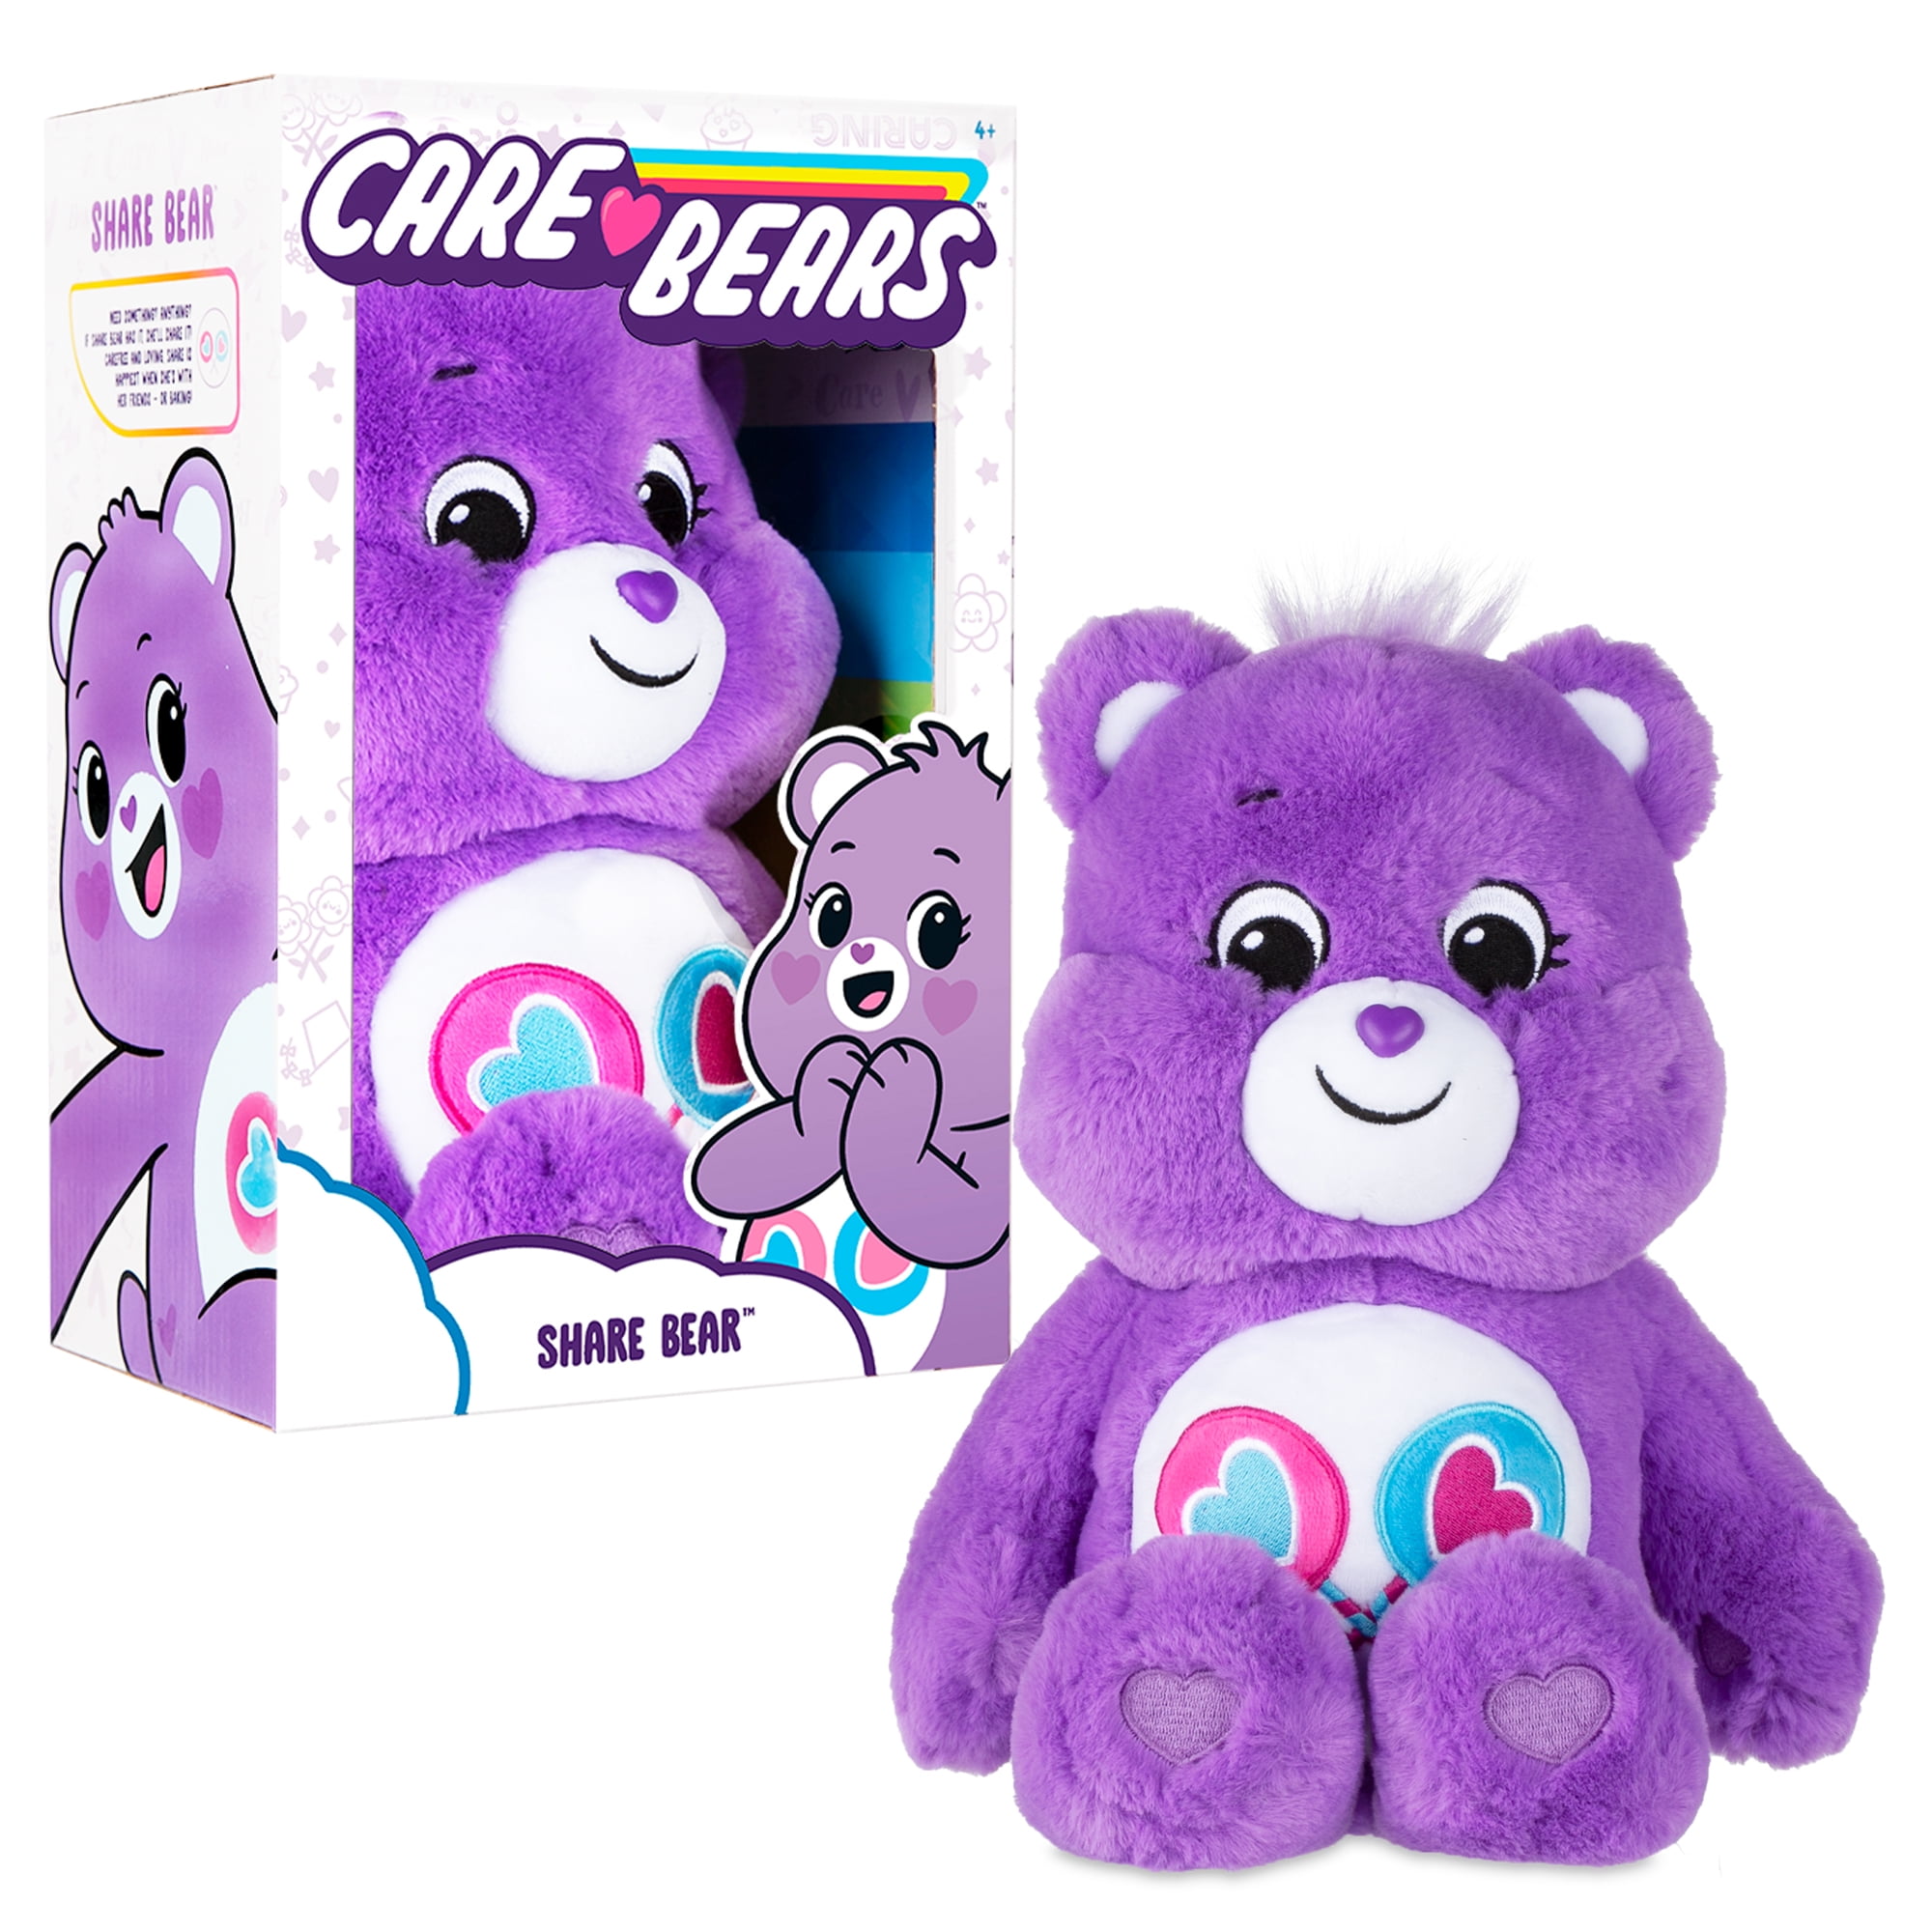 Care Bears Share Bear Milkshake 6" Sitting Plush Stuffed Animal 2017 Bp006 for sale online 